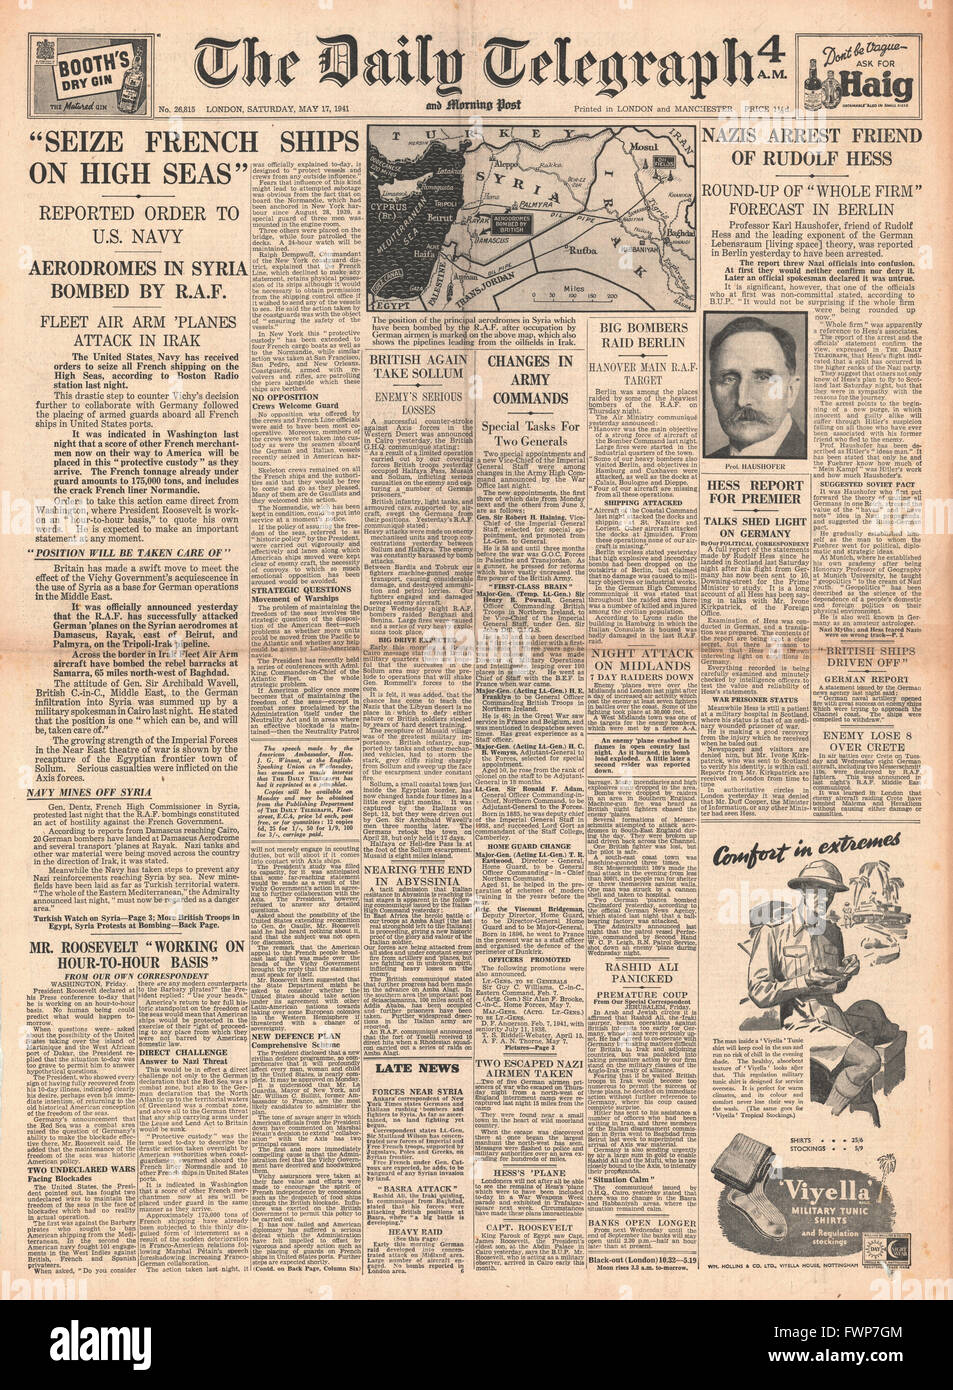 1941 front page Daily Telegraph U.S. Navy ordonné de grippage des navires français, les bases aériennes de bombes de la RAF en Syrie et Karl Haushofer arrêté Banque D'Images